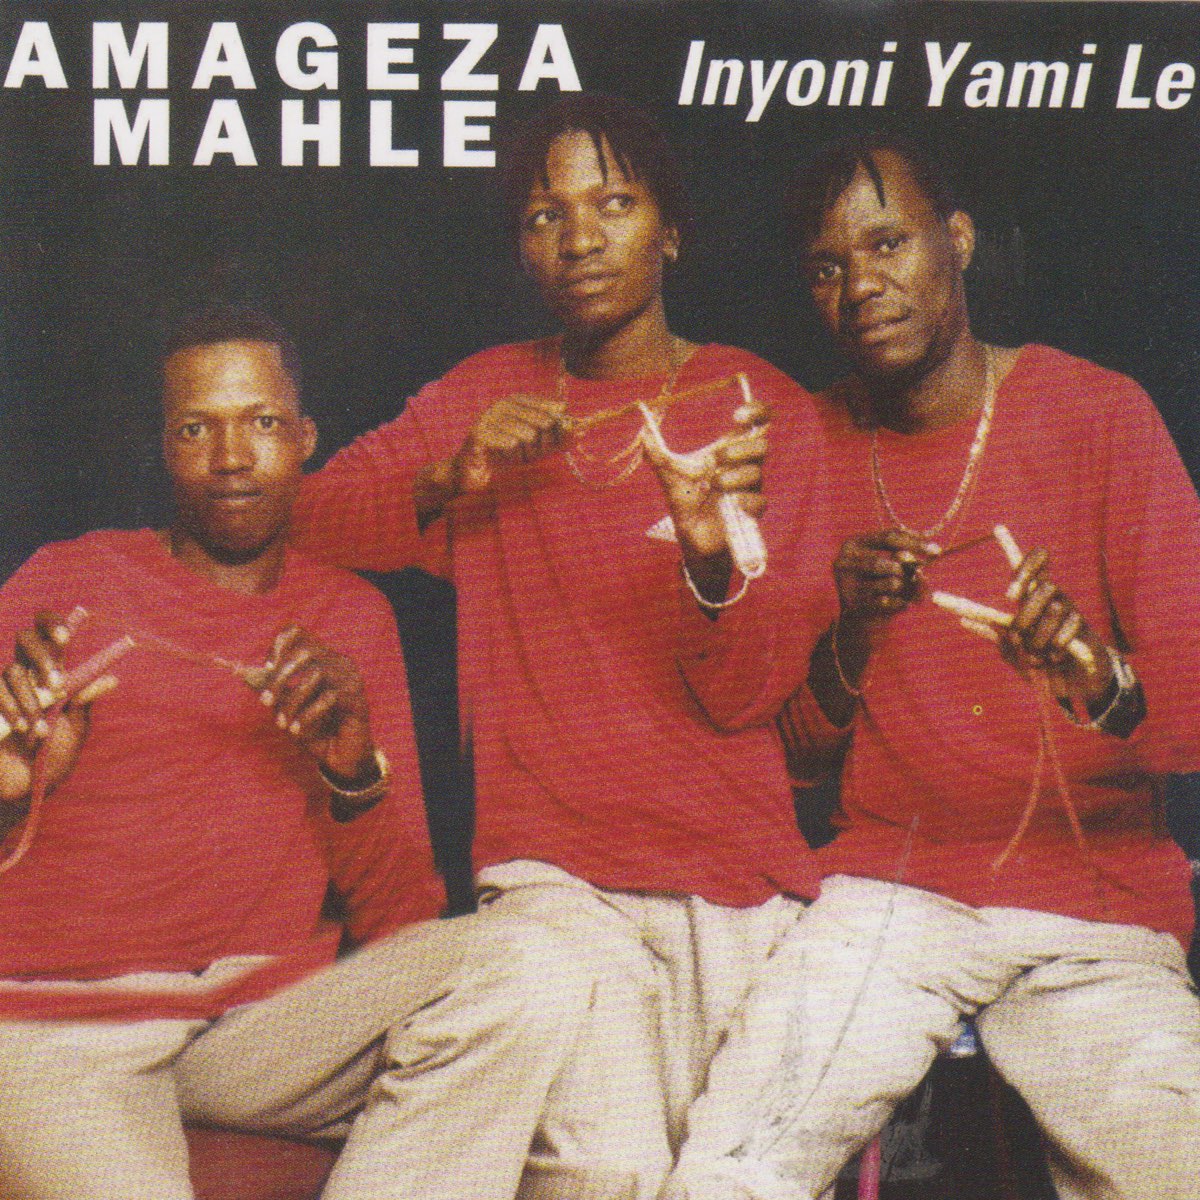 ‎Inyoni Yami Le by Amageza Amahle on Apple Music